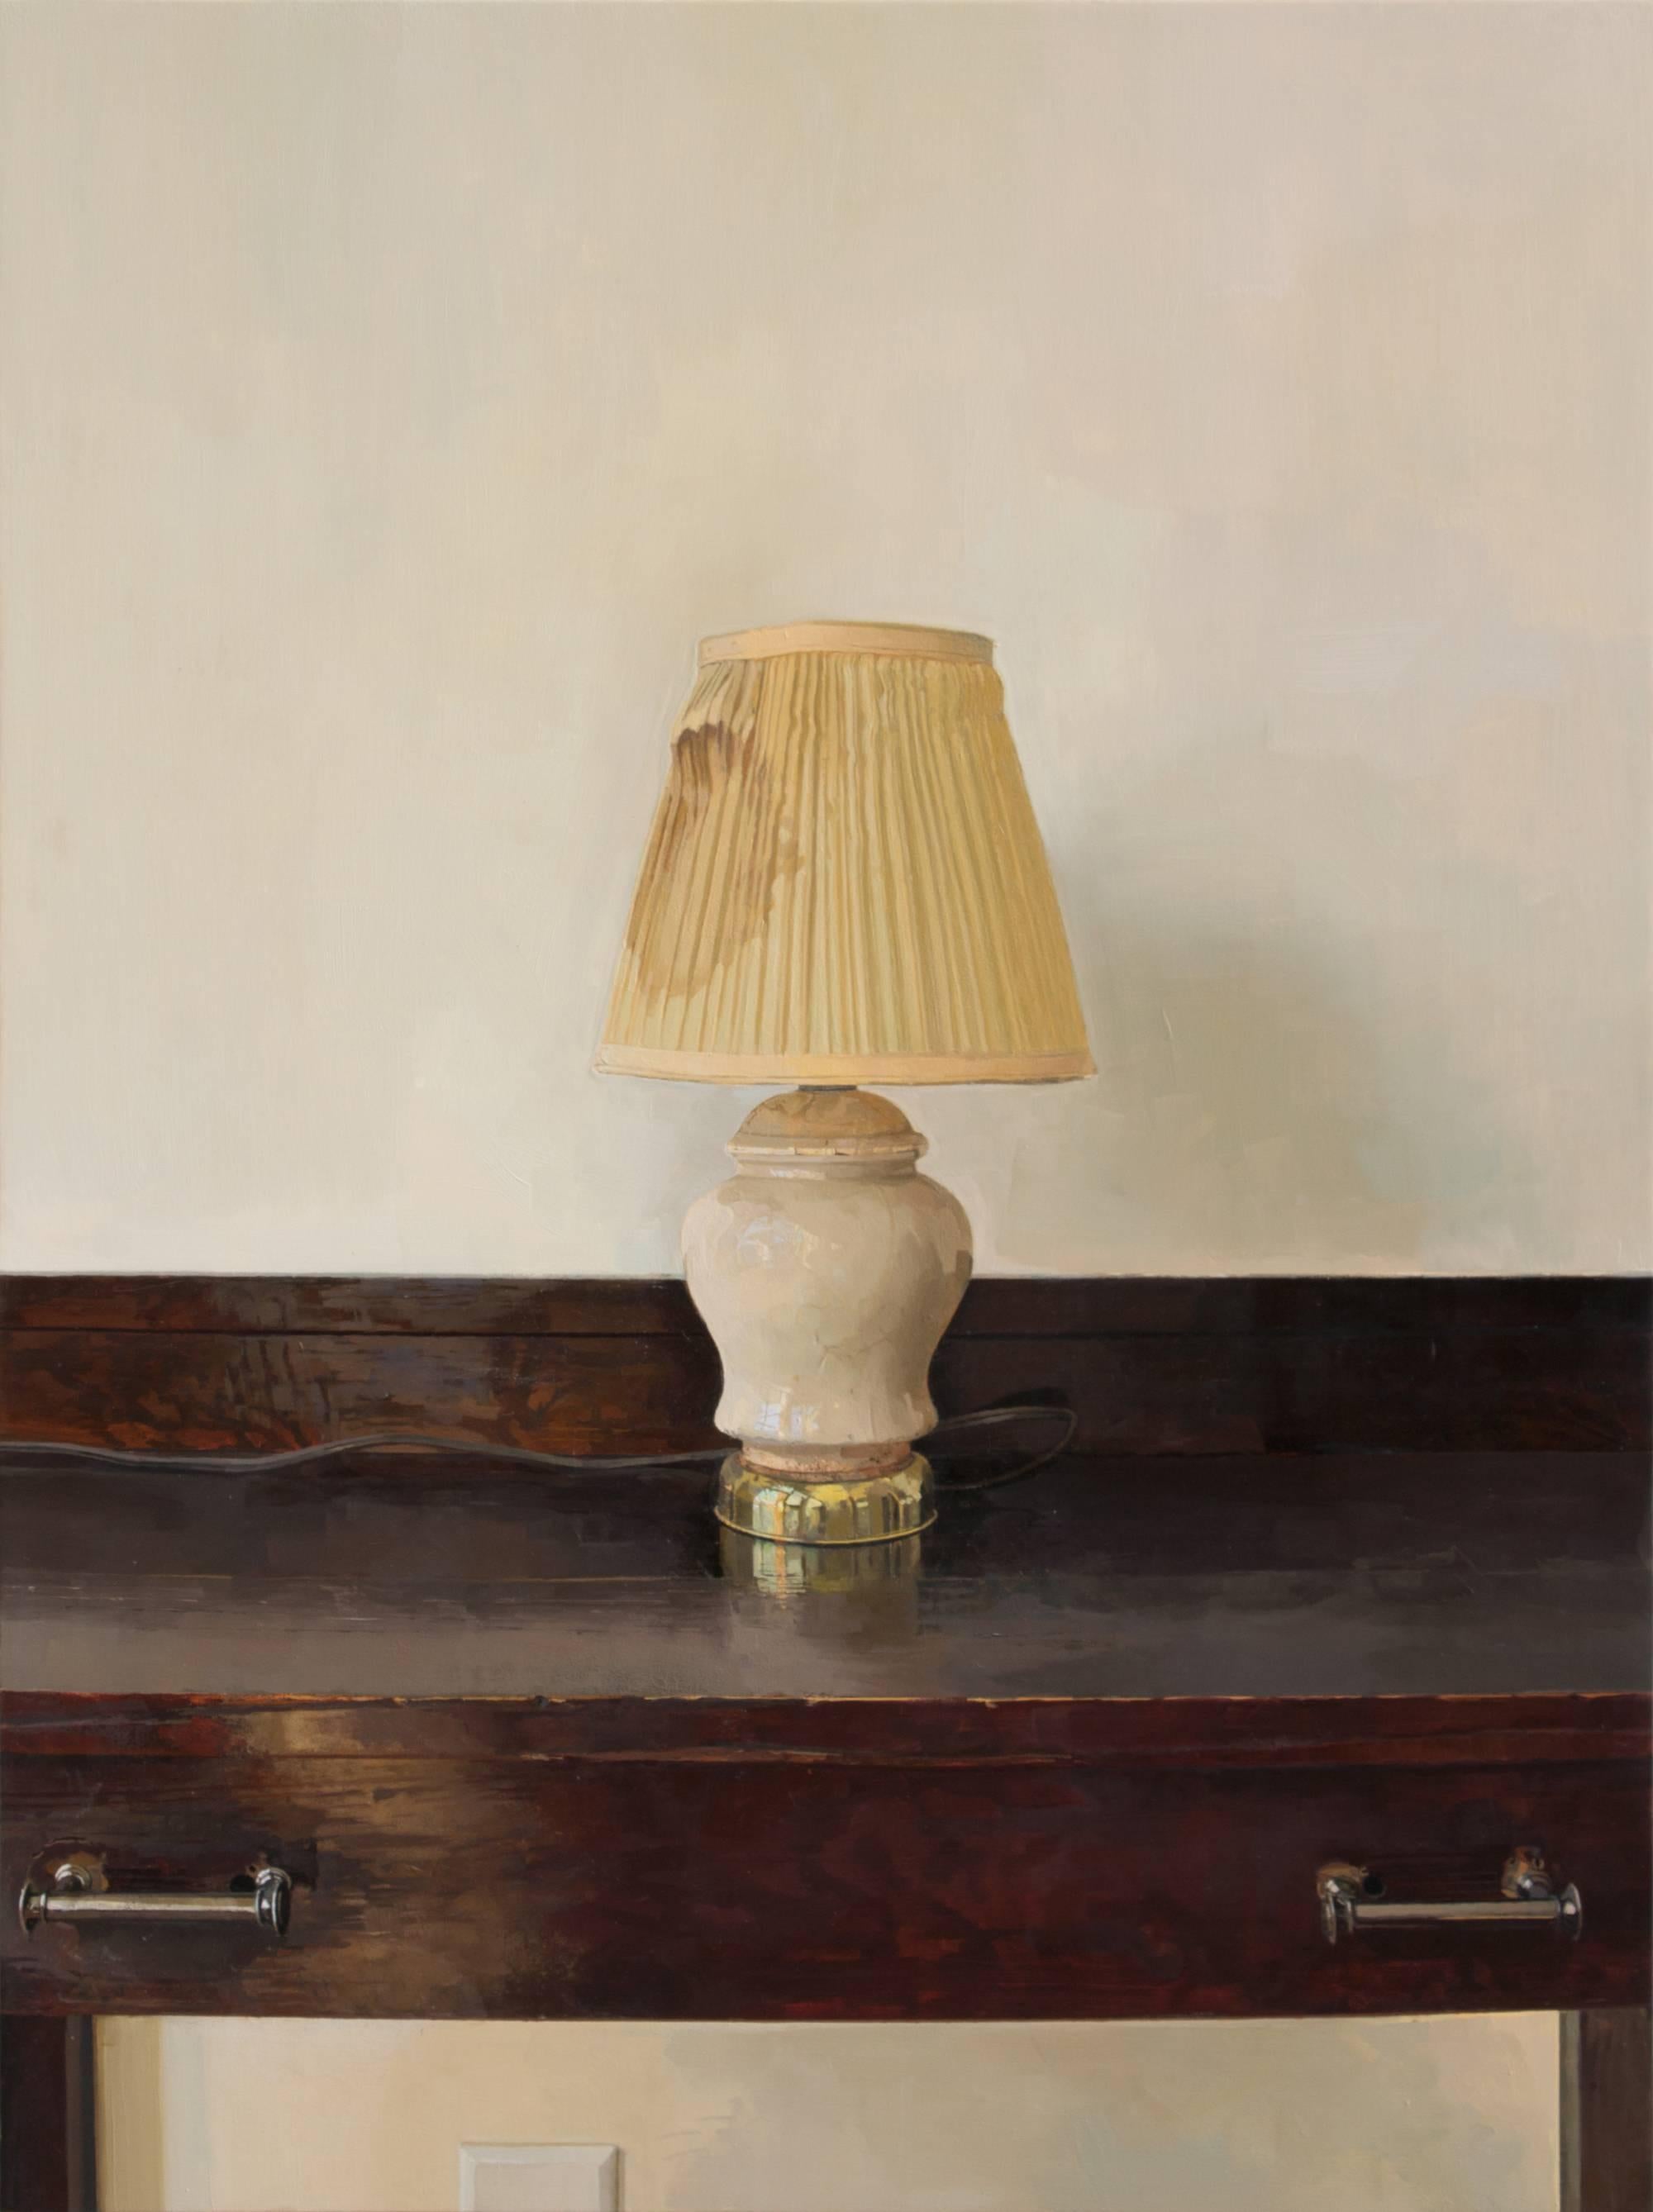 Lampe, neu Revisited, Stillleben mit Lampe auf dunkelbraunem Mahagoni-Holz-Schreibtisch